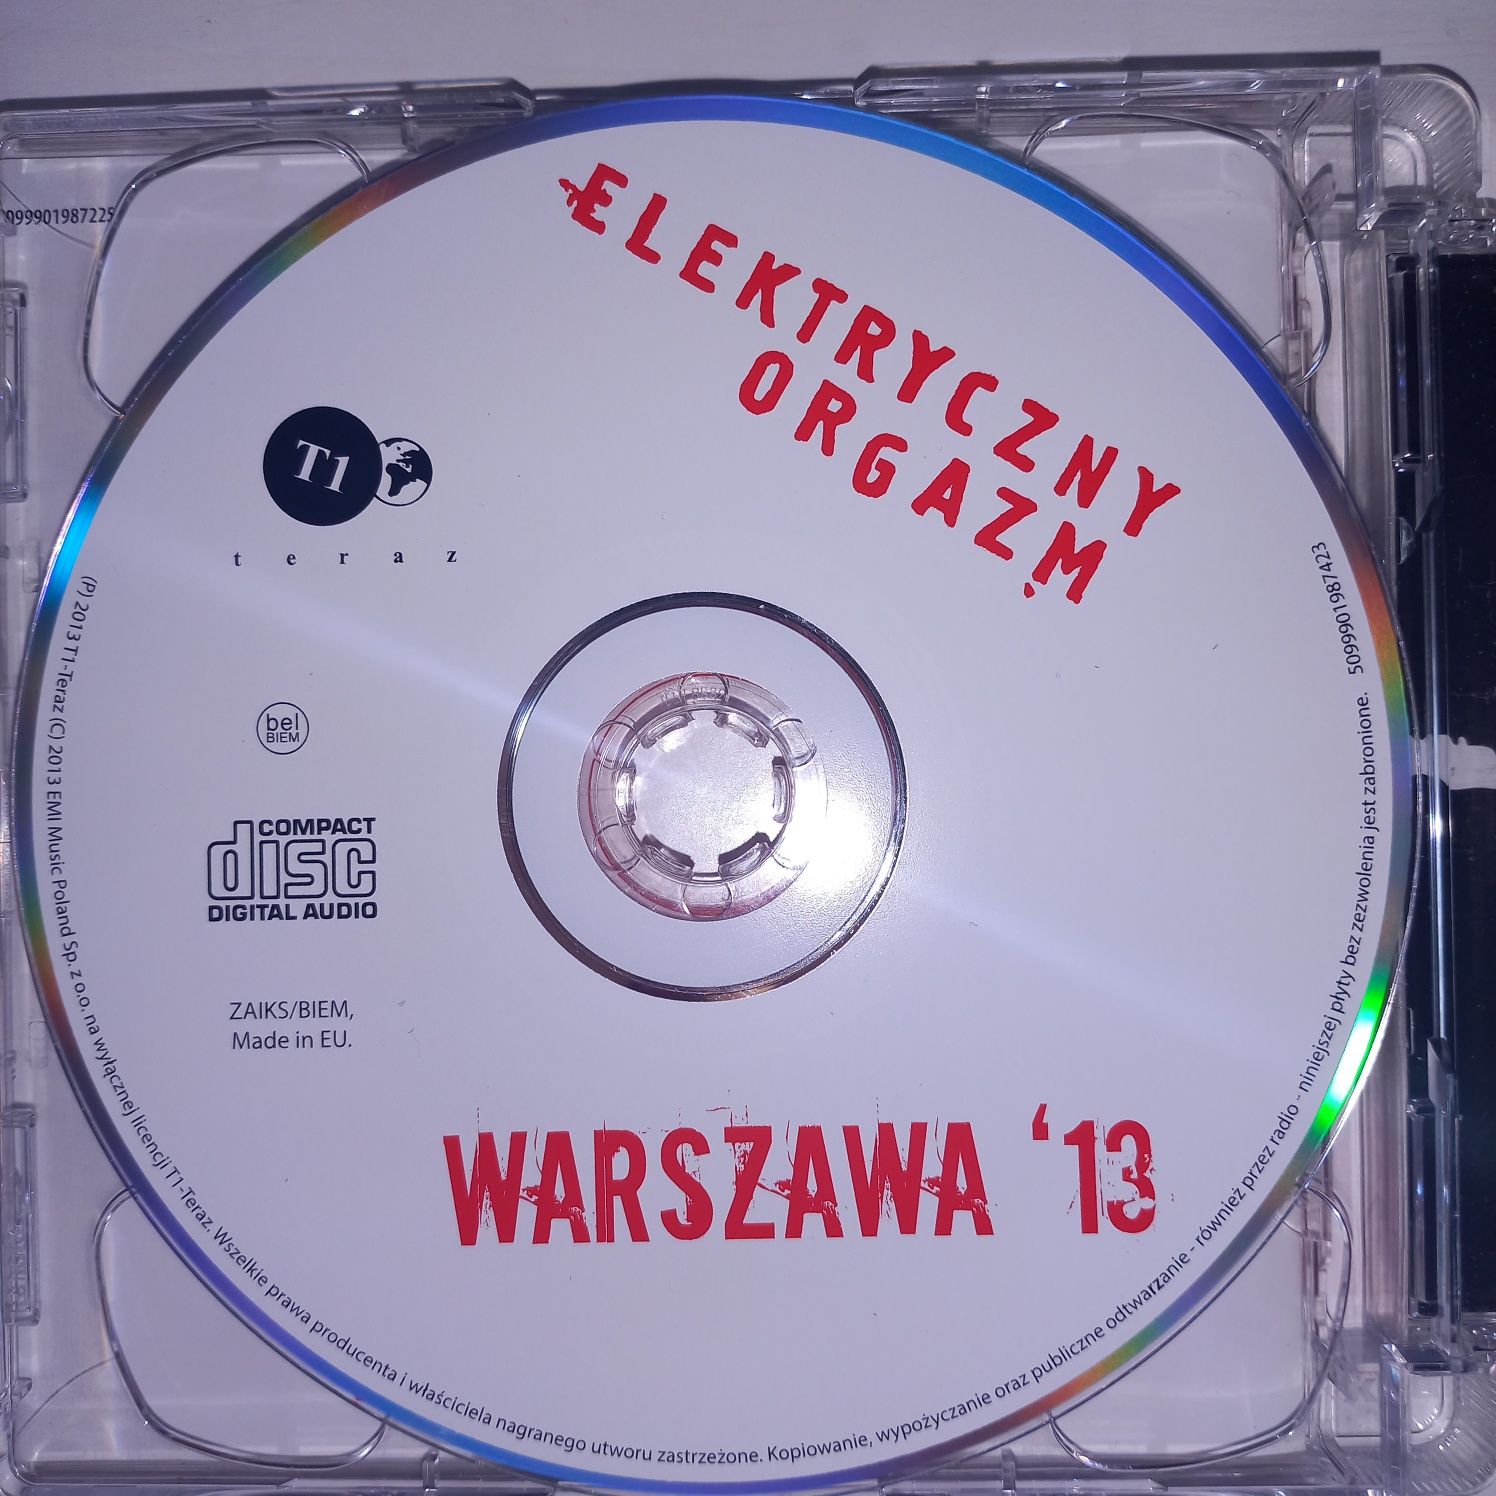 Elektryczny orgazm Warszawa '81 2 CD